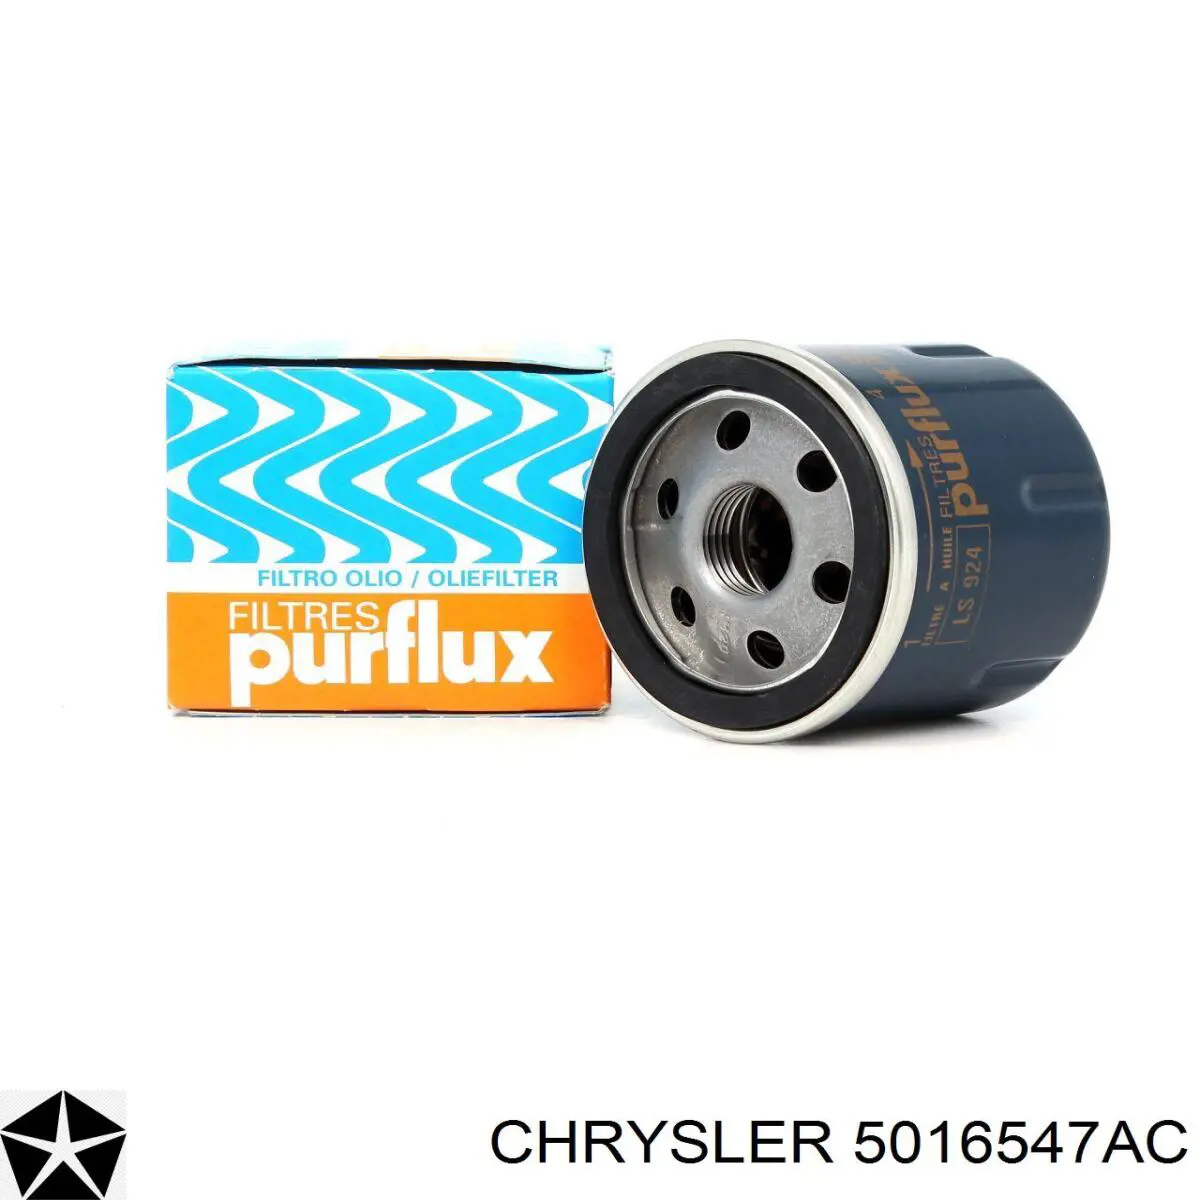 5016547AC Chrysler filtro de aceite